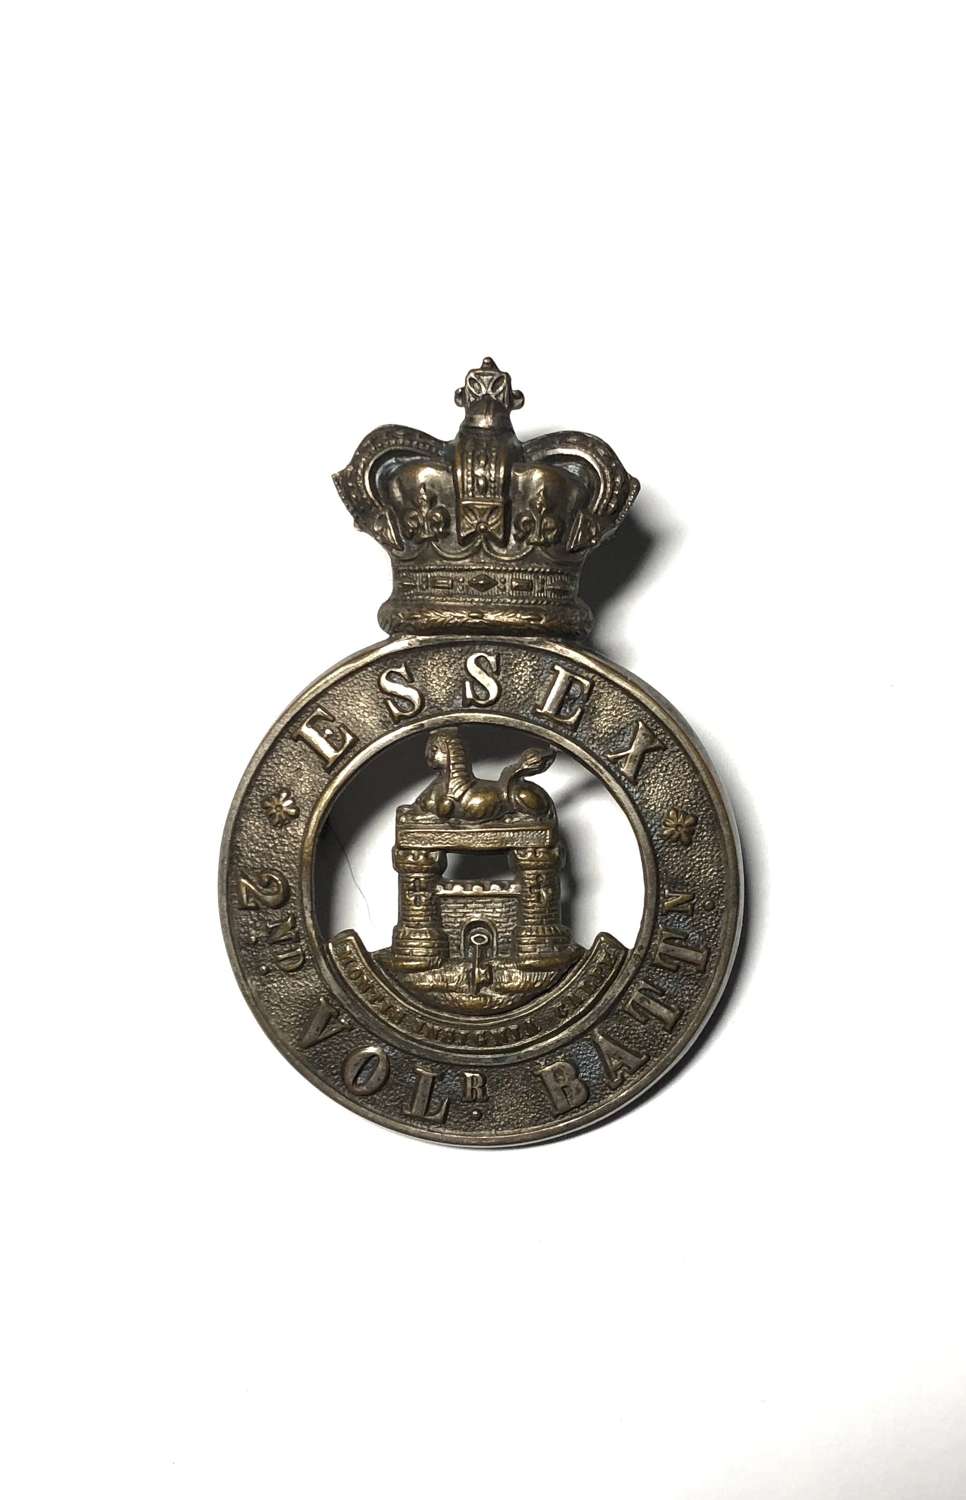 2nd (Colchester) VB Essex Regiment Victorian glengarry badge c1883-96